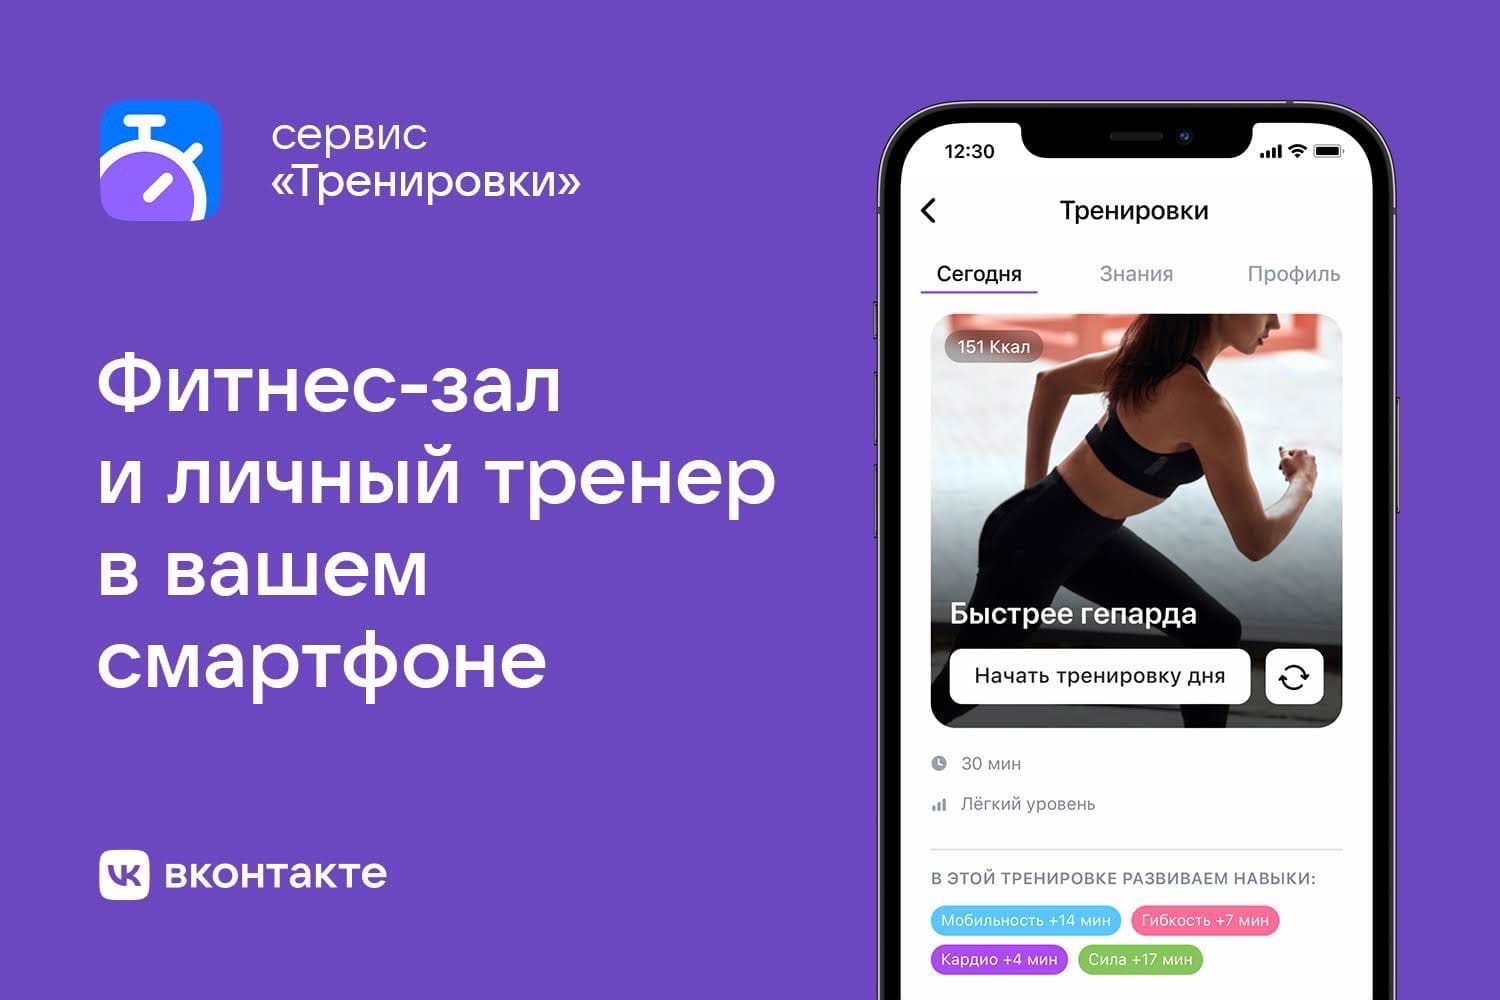 «ВКонтакте» представила сервис «Тренировки» внутри приложения соцсети.